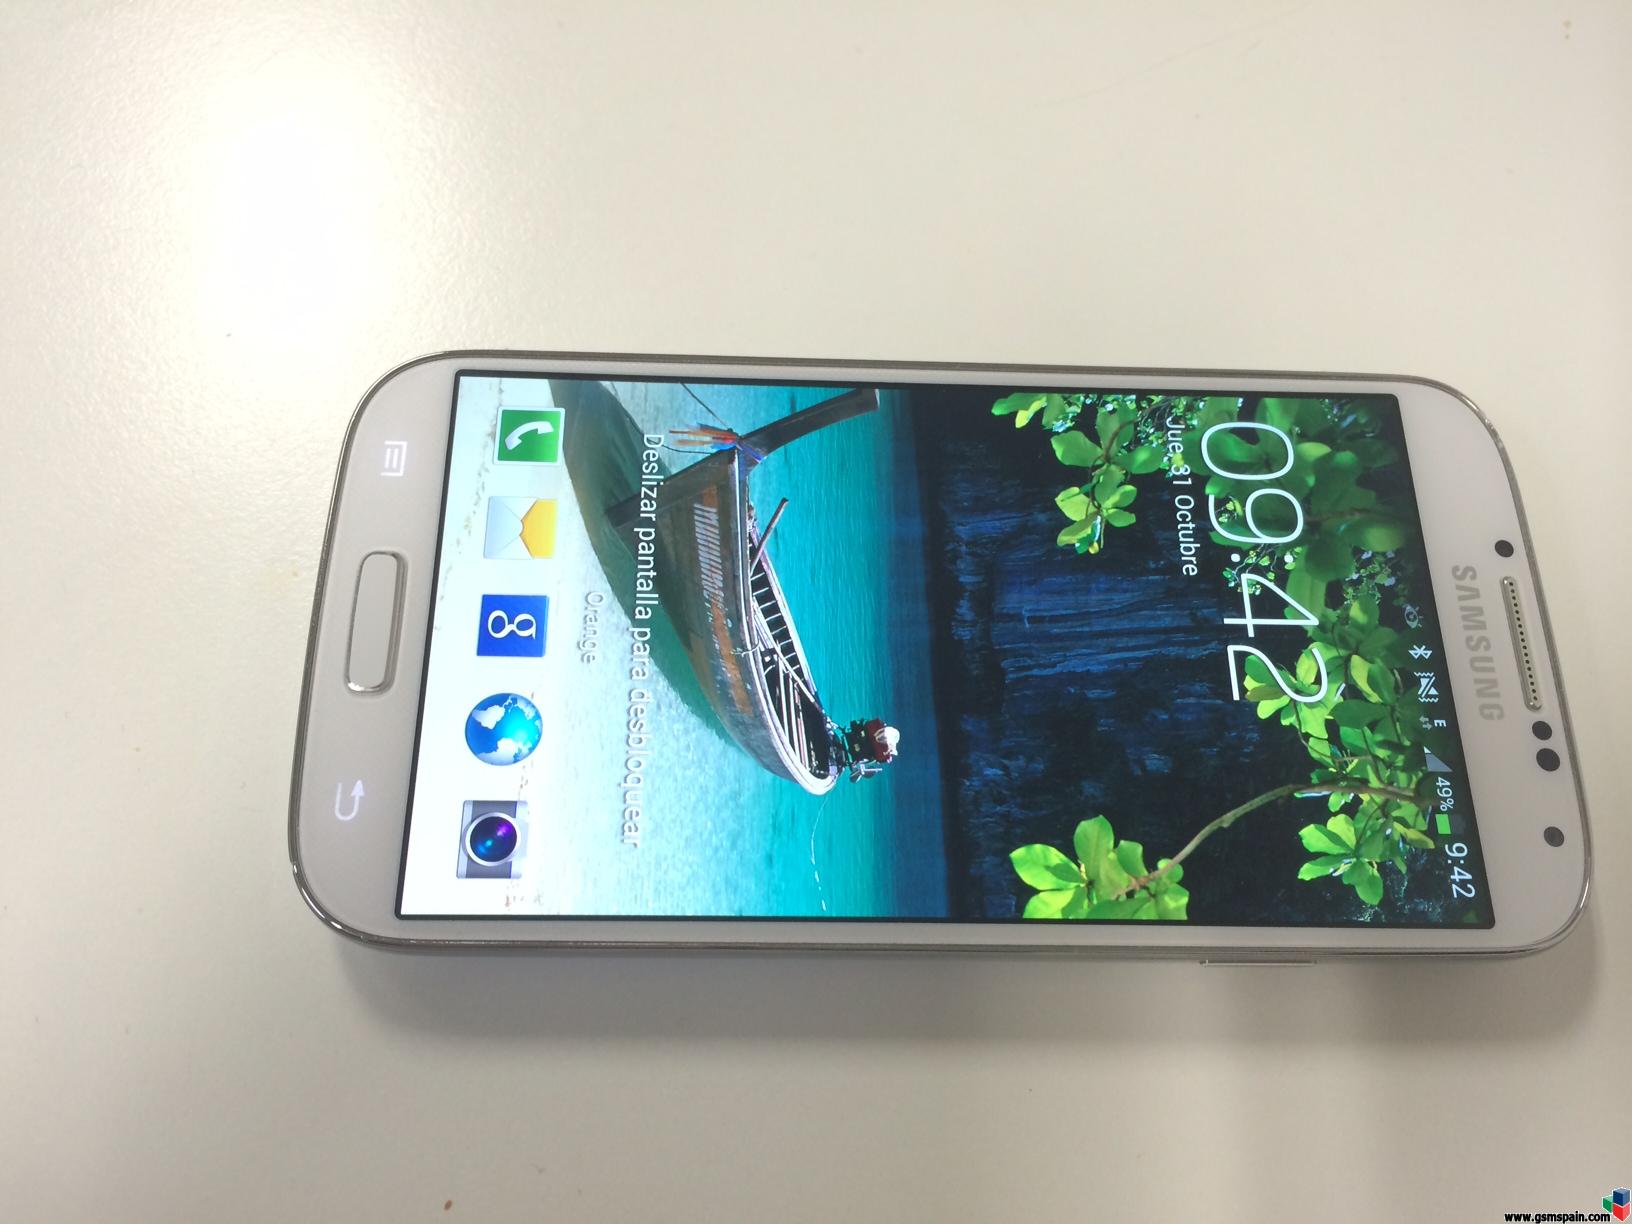 [VENDO] Samsung galaxy S4 blanco con un roce esttico, perfecto funcionamiento. Econmico!!